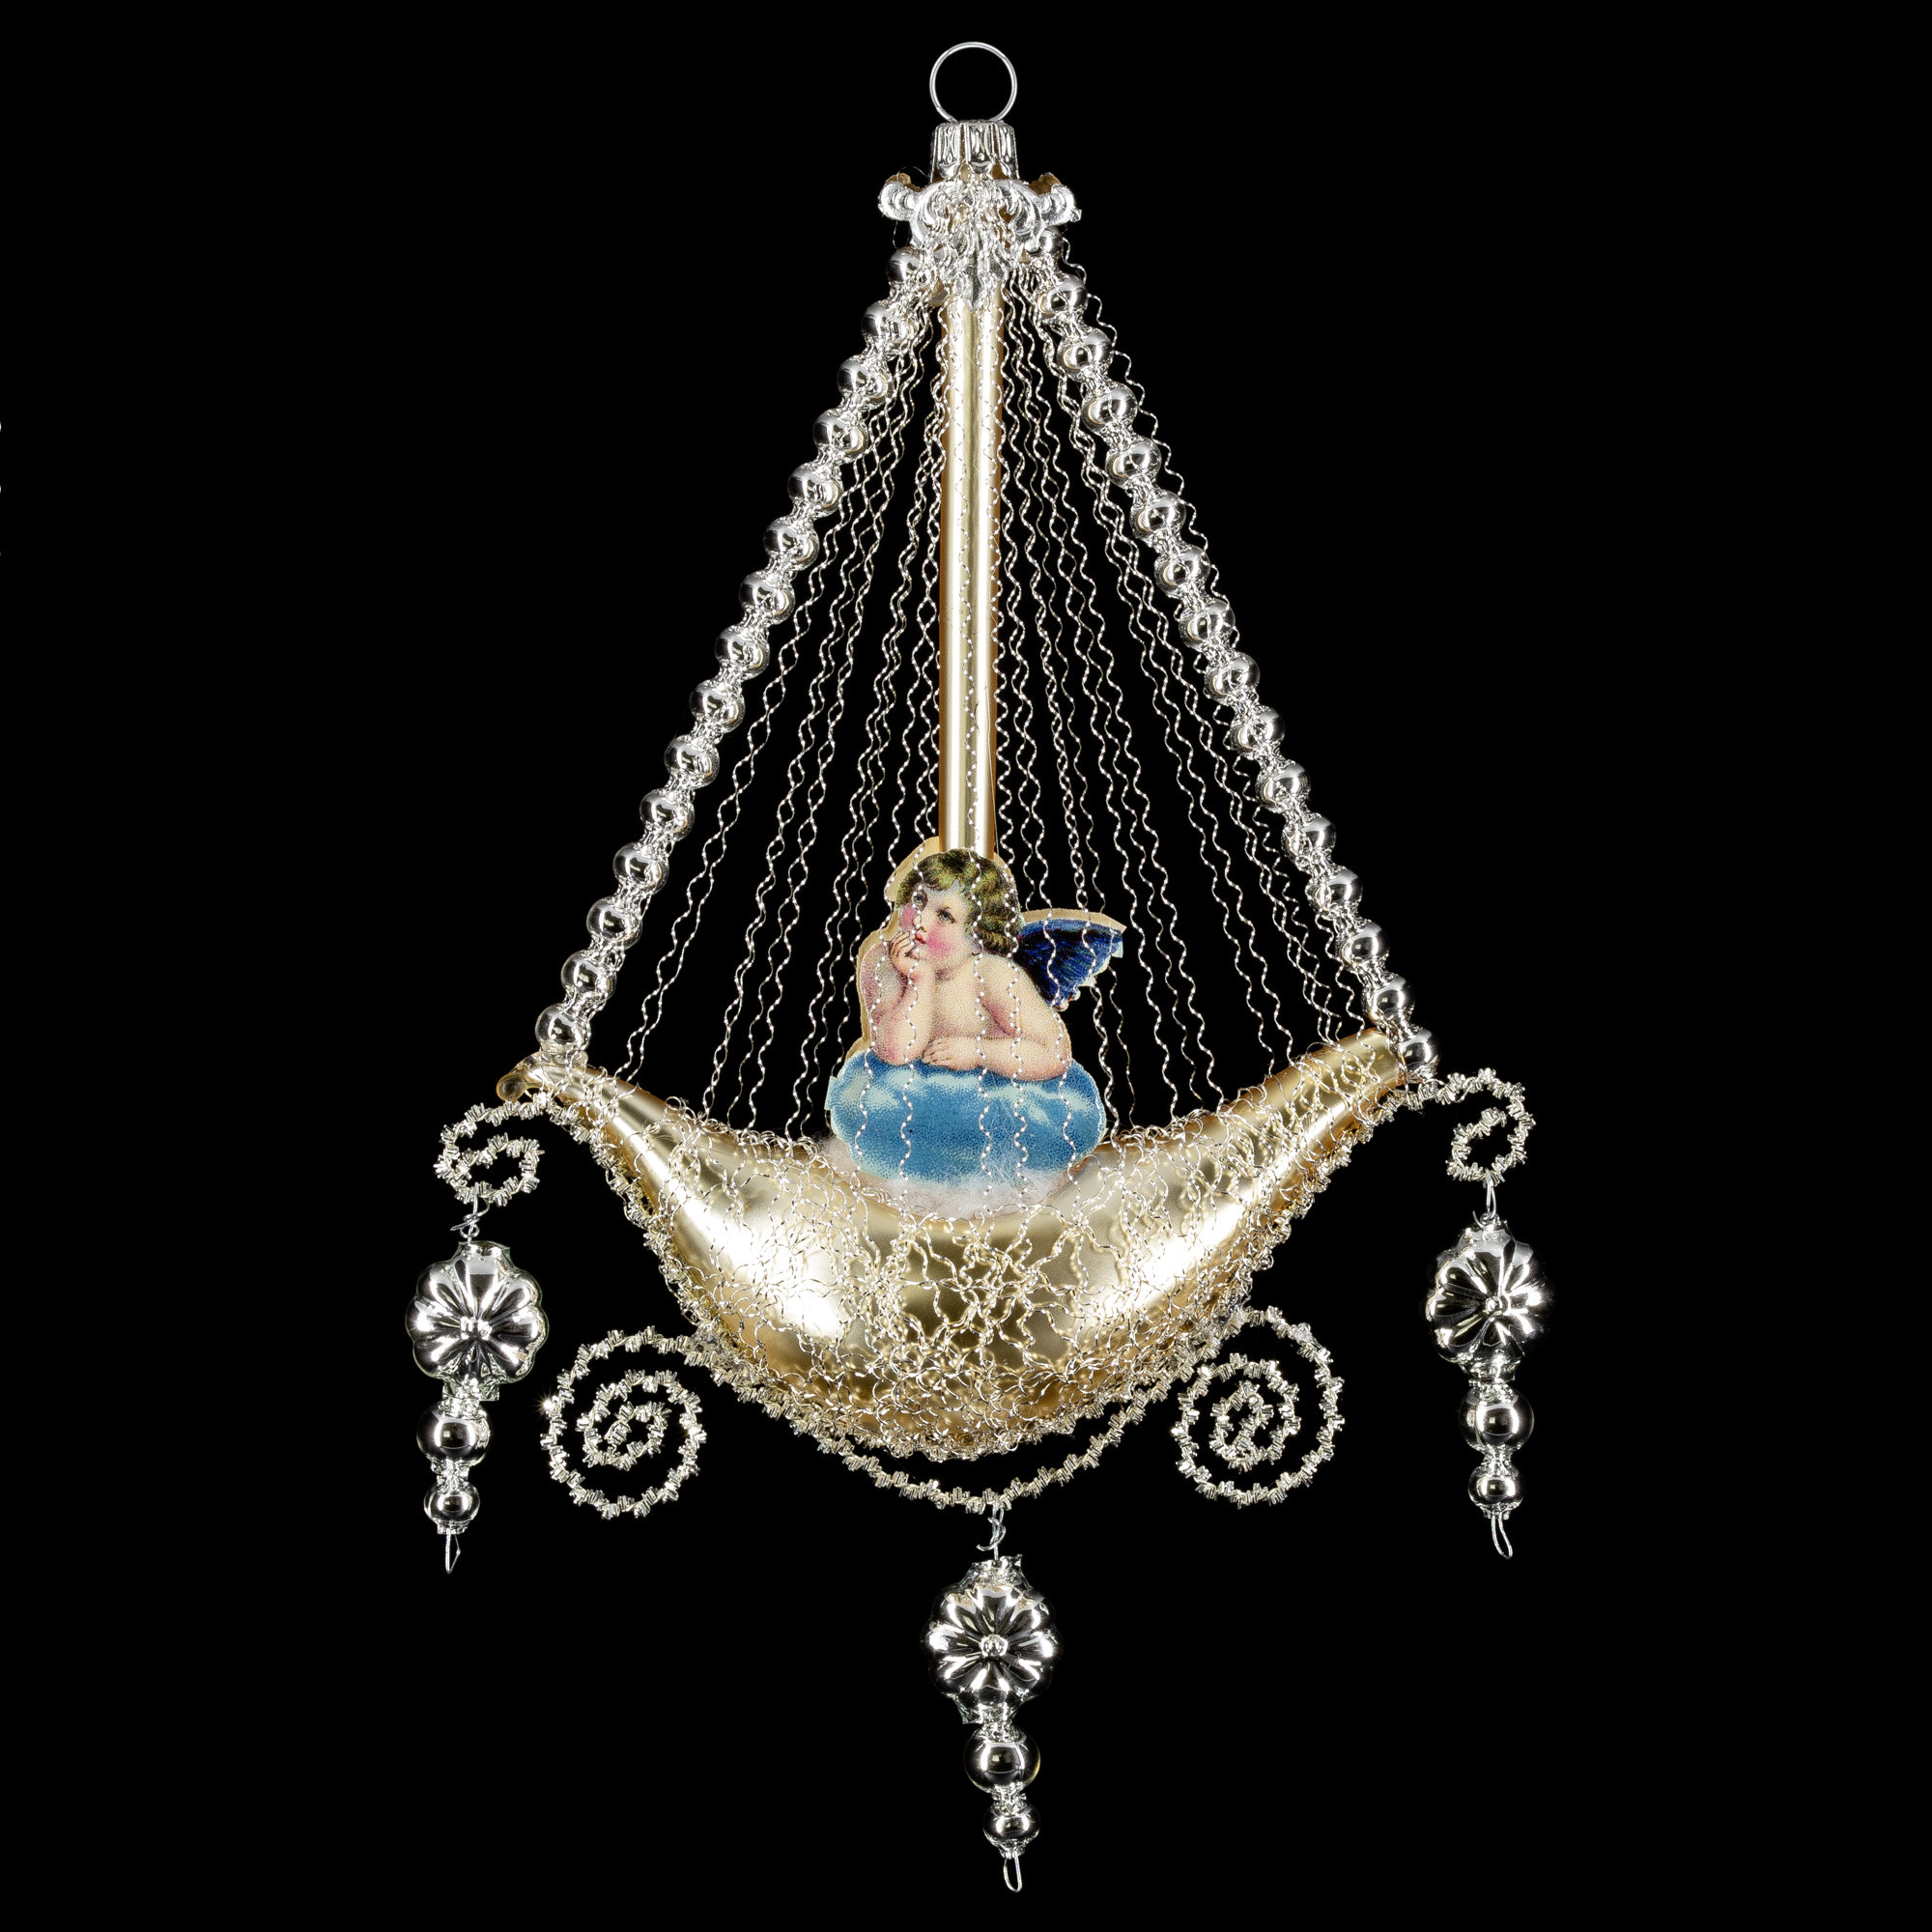 Gondel mit 2 Engel-Oblaten, Kantille und Perlenhänger, gold